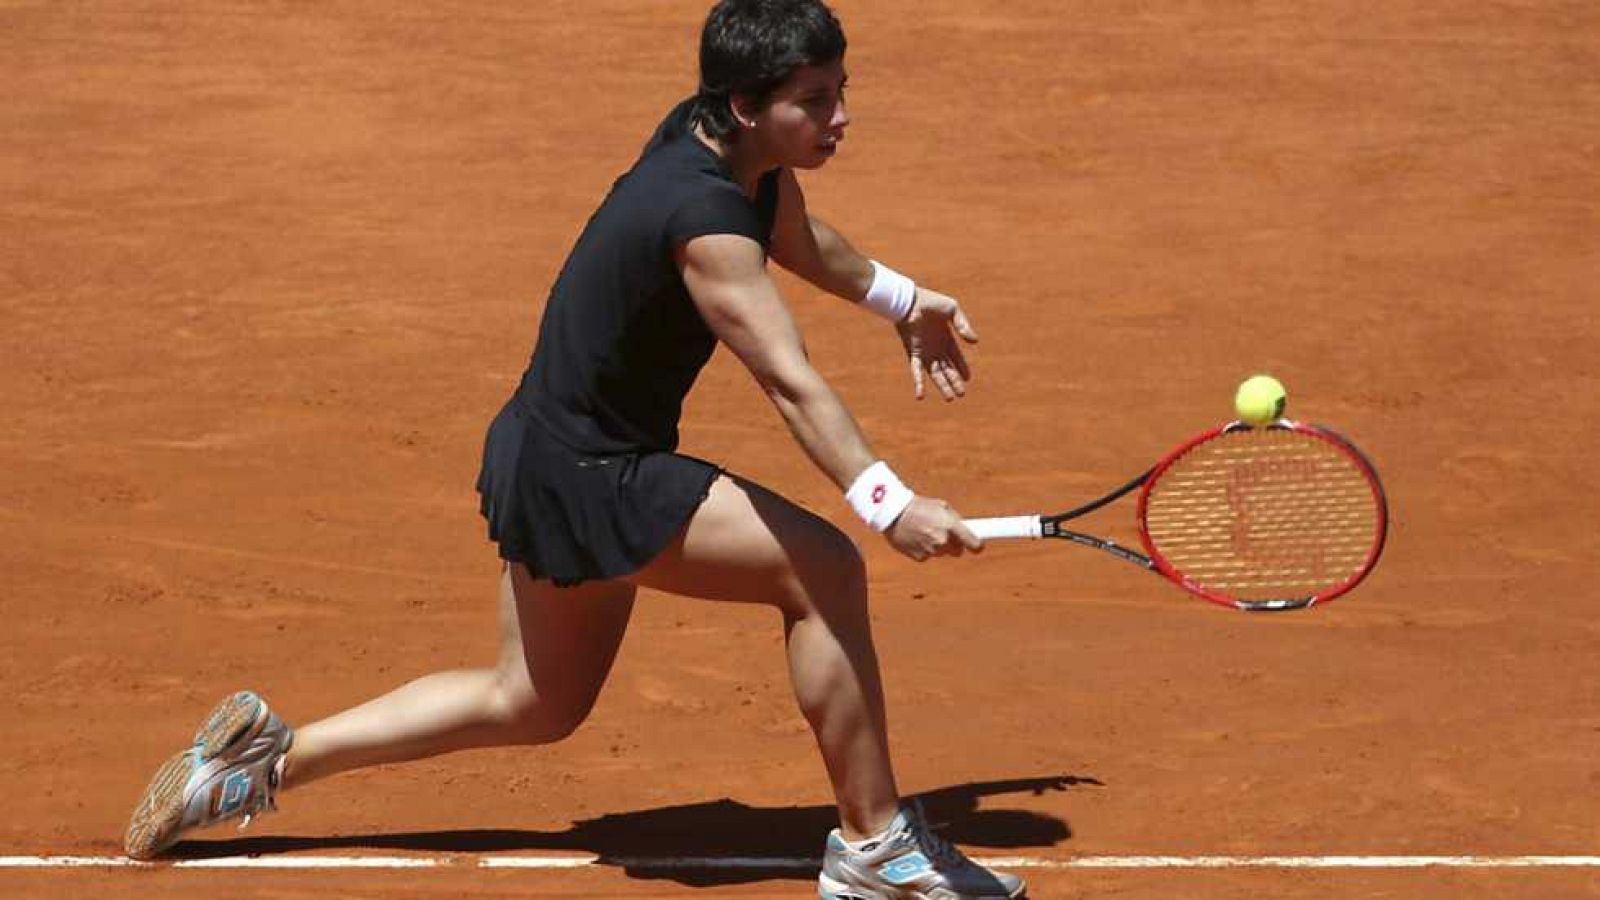 Objetivo Ro - Programa 74 - Tenis femenino: Garbie Muguruza y Carla Surez - Ver ahora